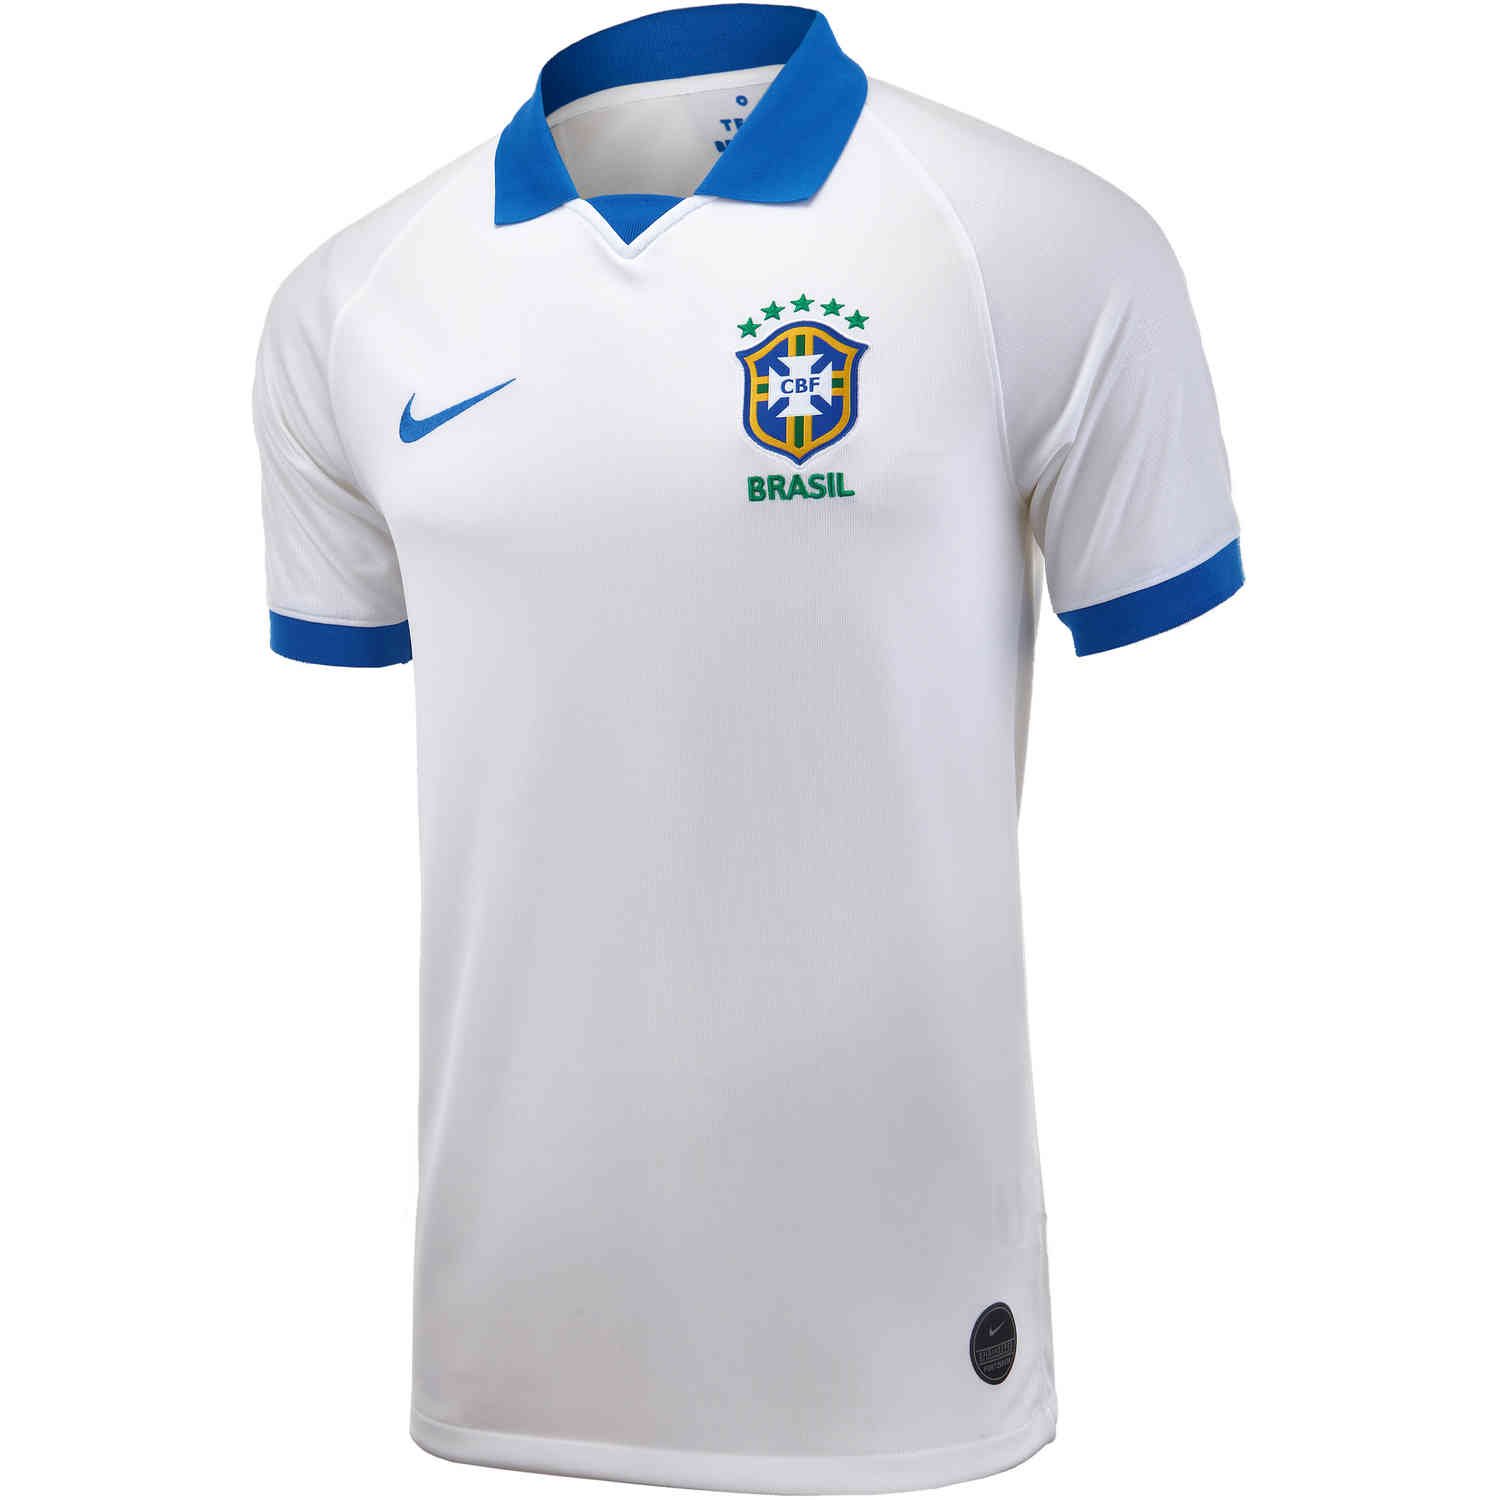 Verwachting Ellendig Groenten 2019 Nike Copa America Brazil Away Jersey - SoccerPro